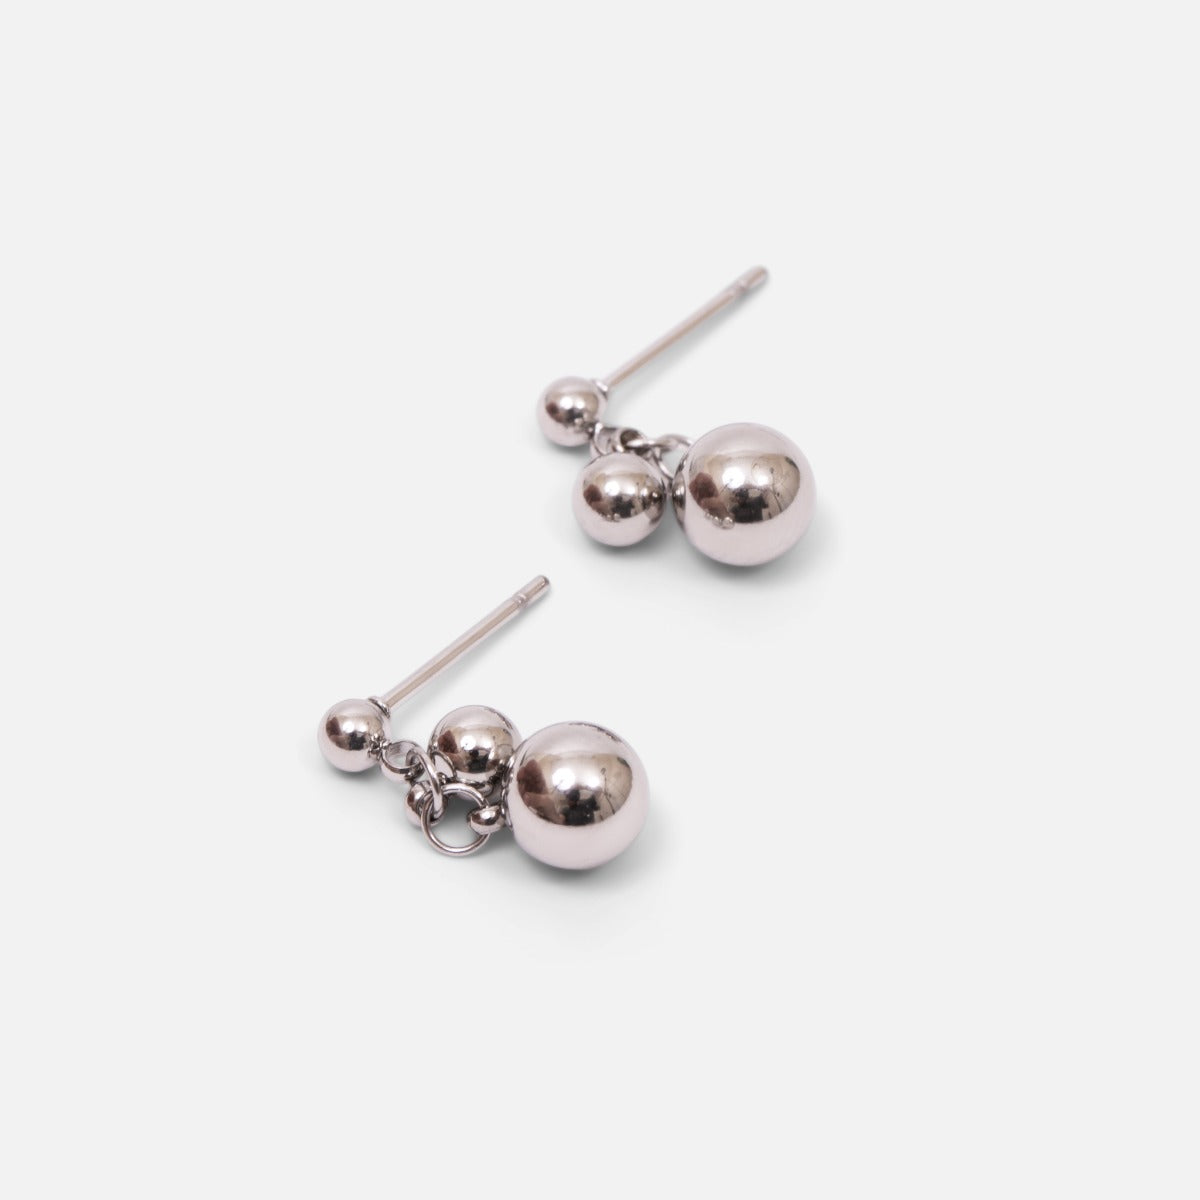 Petites boucles d’oreilles fixes avec trois perles argentées en acier inoxydable